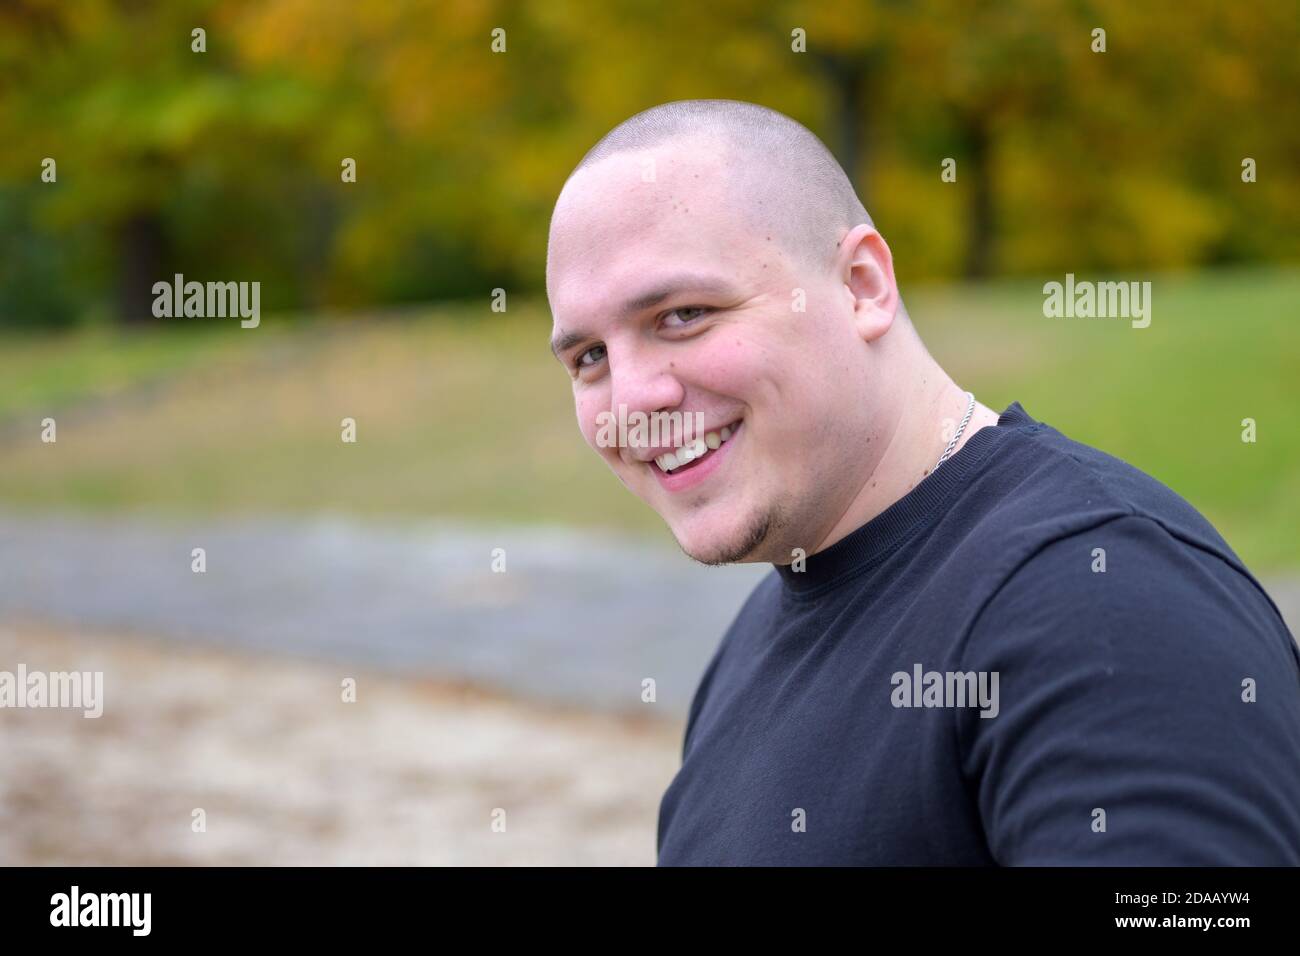 Lächelnd freundlich verdickt junger Mann mit einem rasierten Kopf suchen Seitlich an der Kamera im Freien in einem Park im Herbst Stockfoto